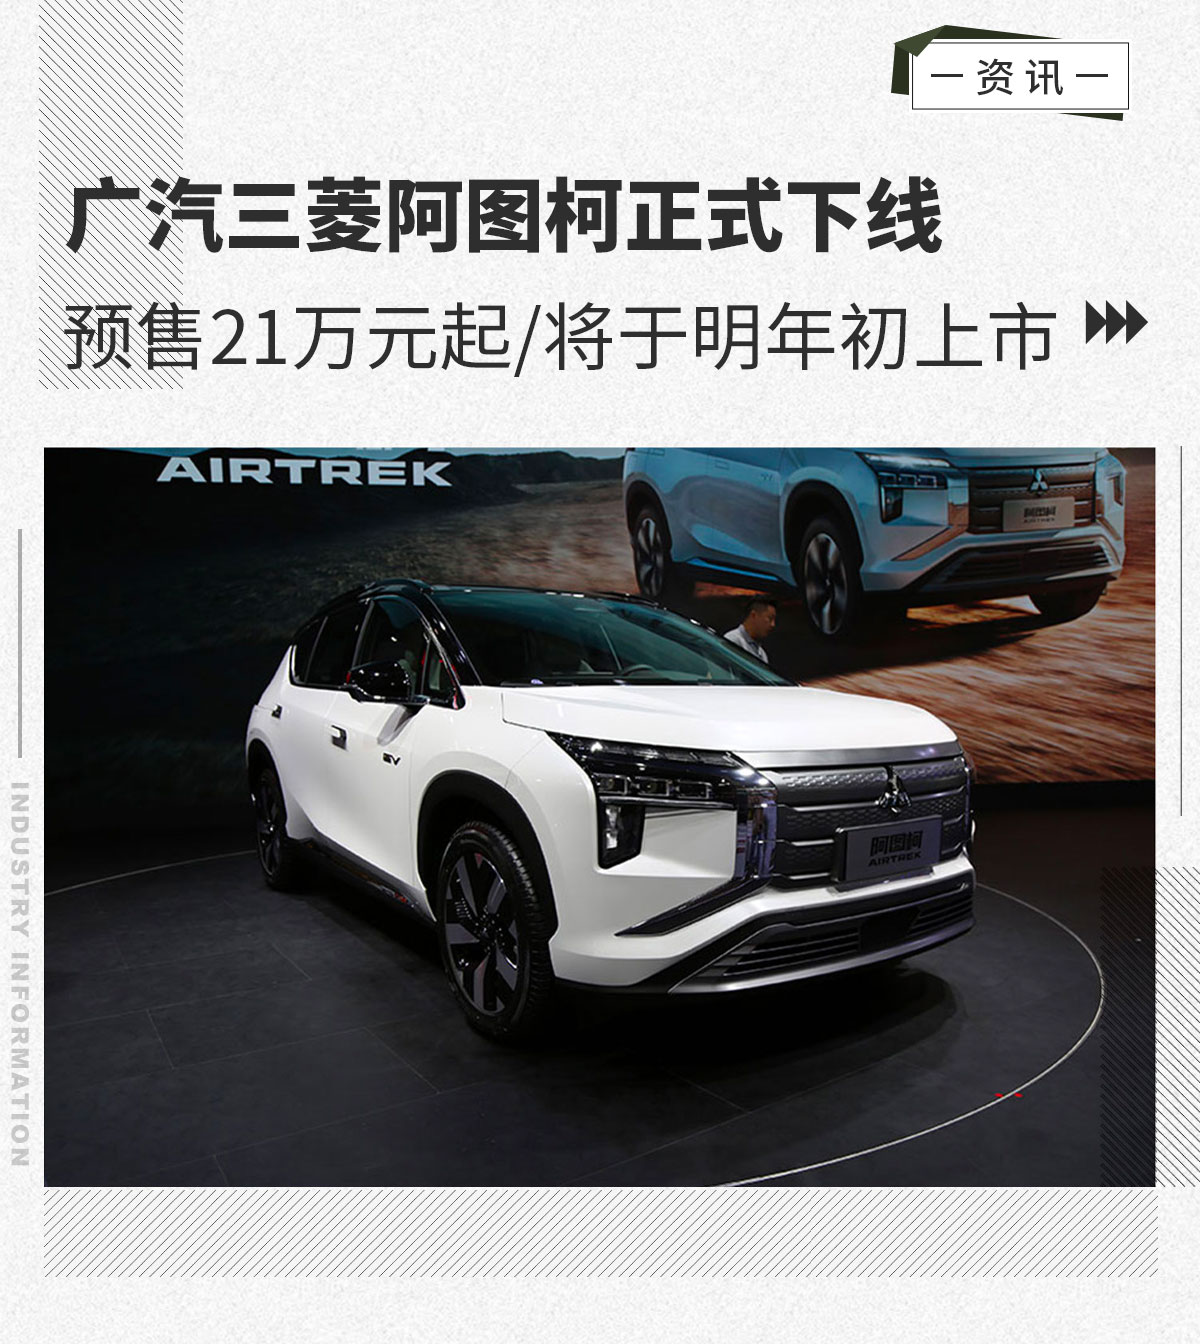 广汽三菱阿图柯正式下线 预售21万起/明年初上市